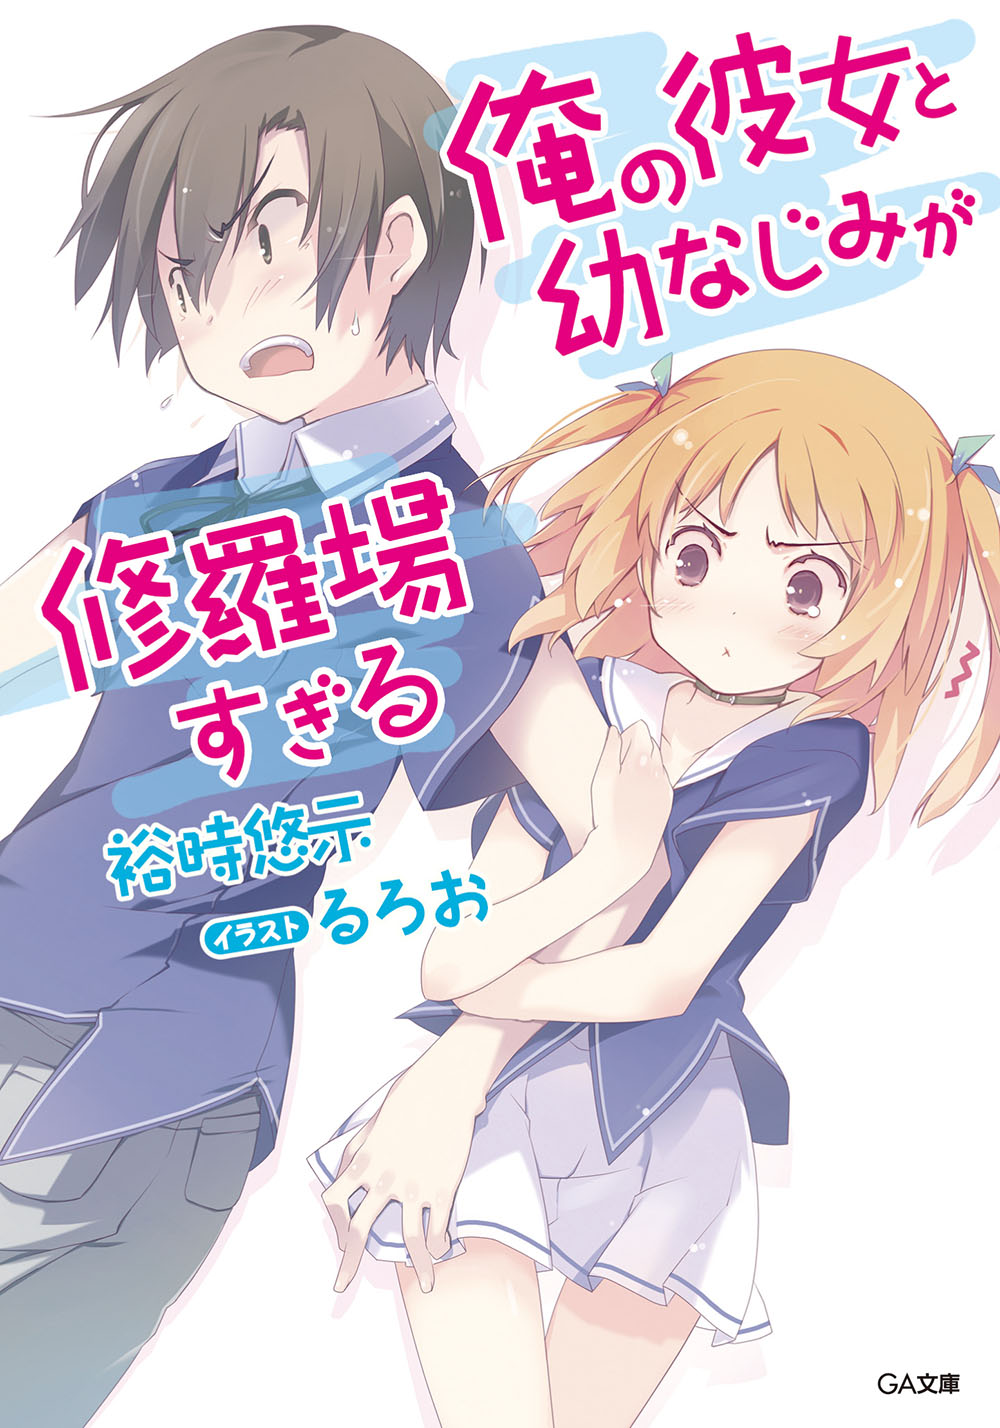 Ore no Kanojo to Osananajimi ga 1 to 18 6.5 19 Set japanese novel book  oreshura